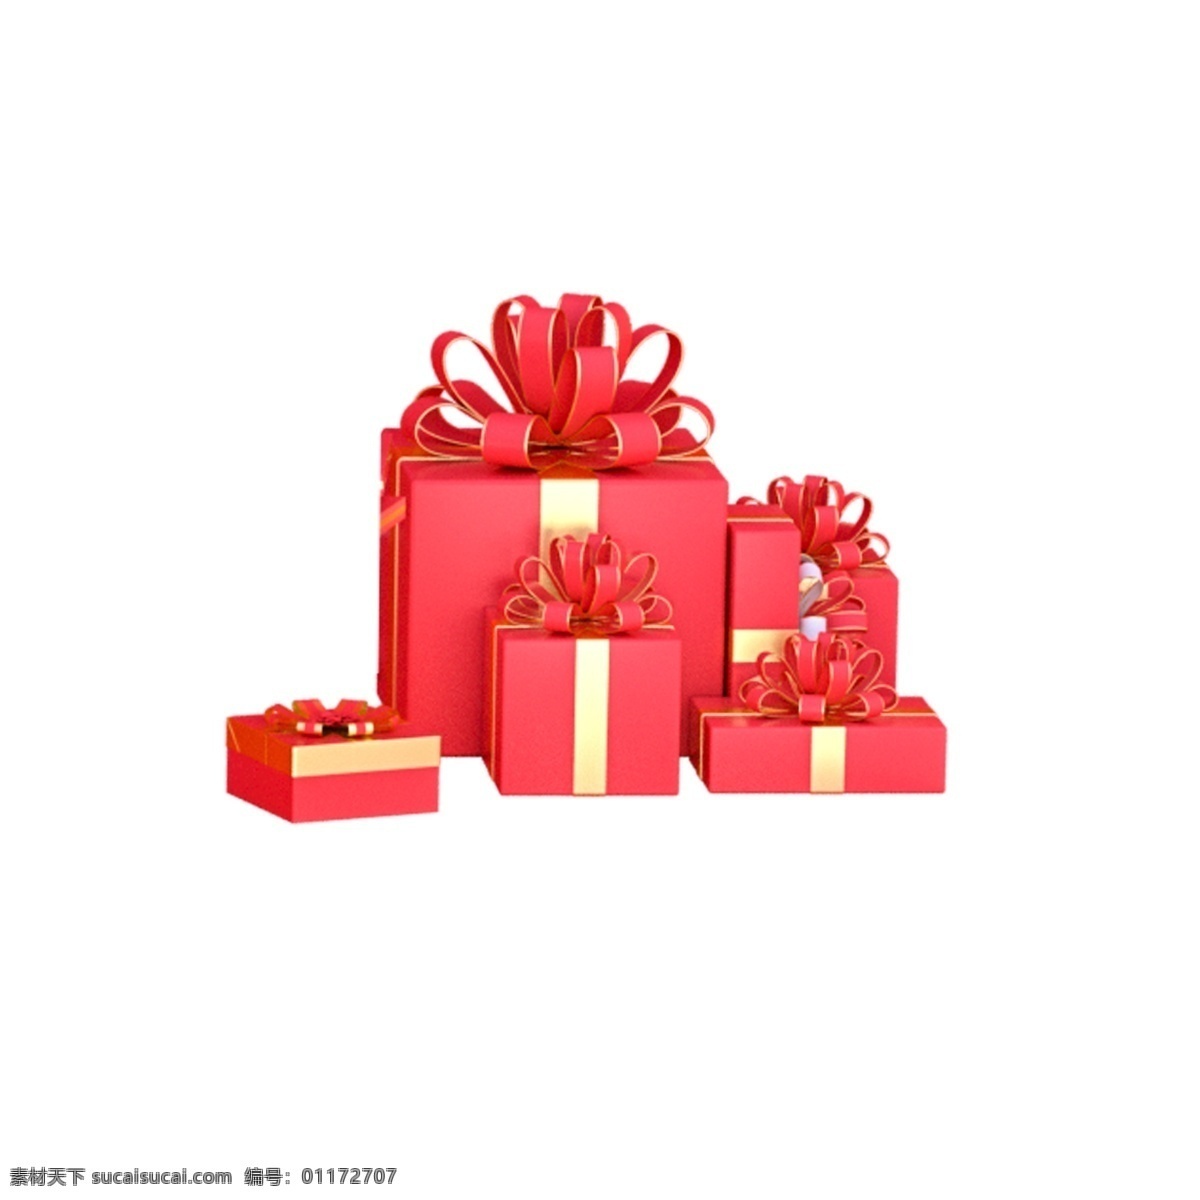 礼品盒 礼盒 彩色礼盒 红色礼盒 盒子 礼品 箱子 过年礼盒 圣诞礼盒 圣诞礼品 素材图